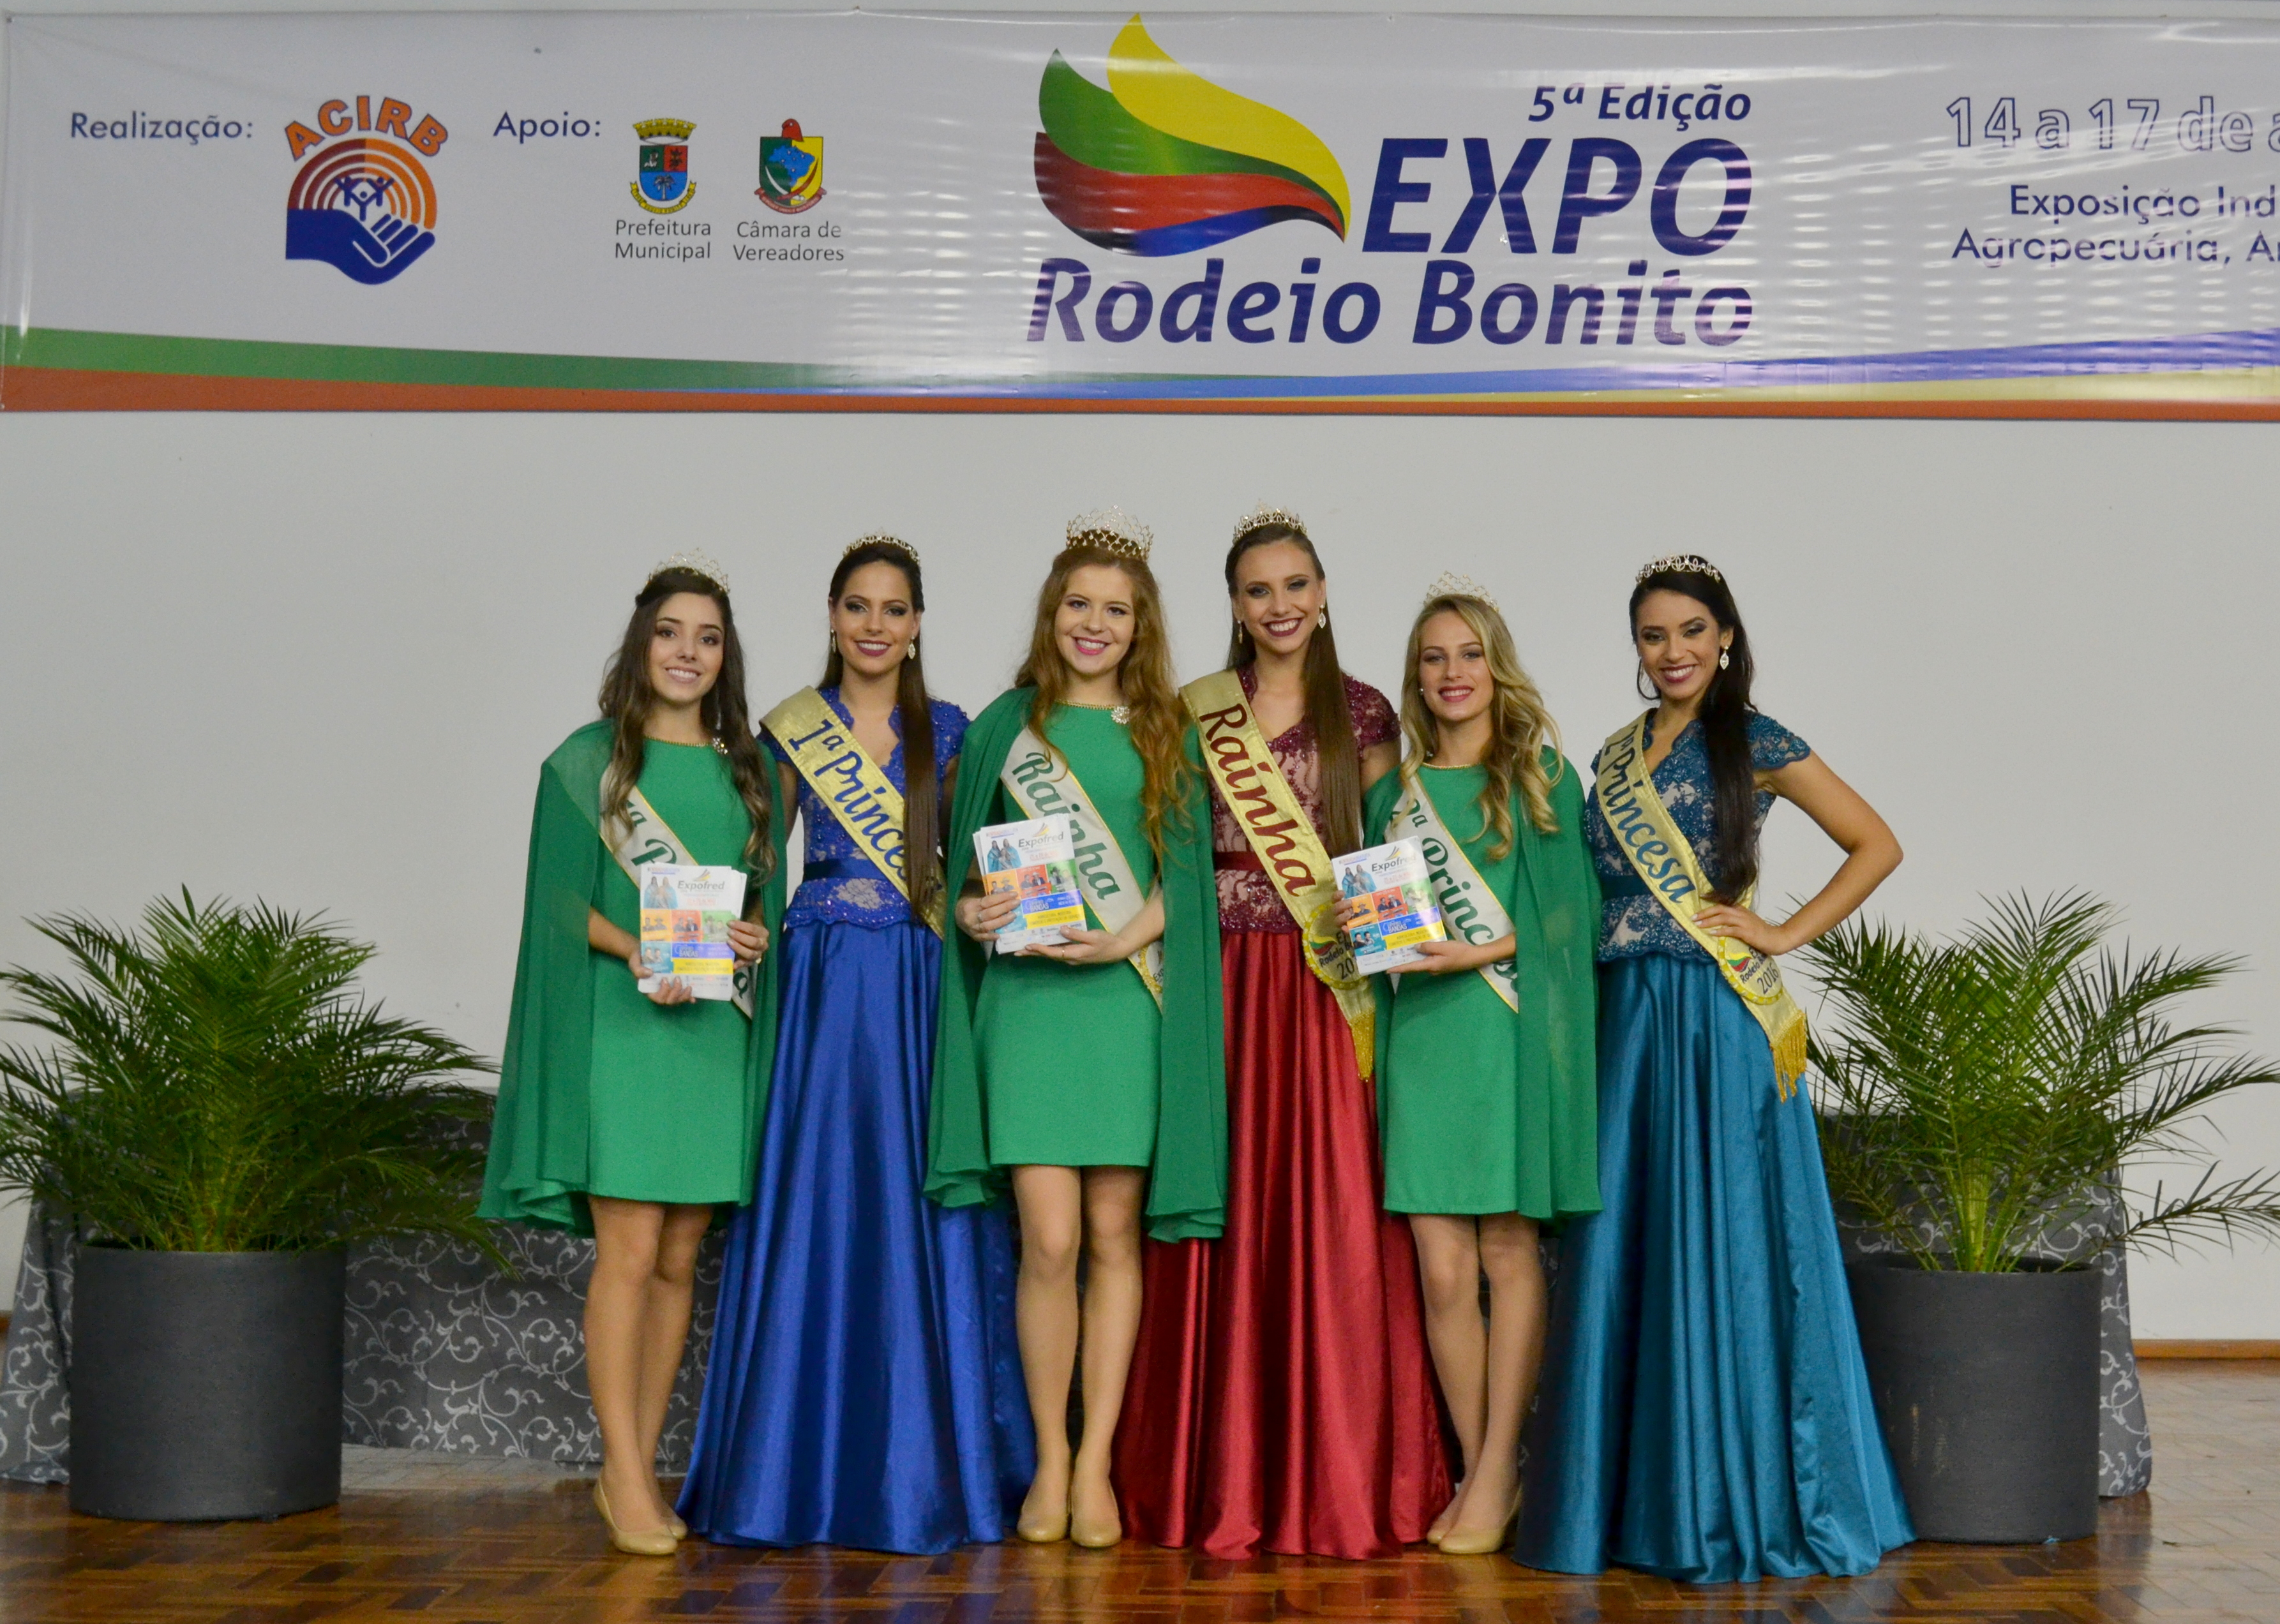 Expofred prestigia Expo Rodeio Bonito